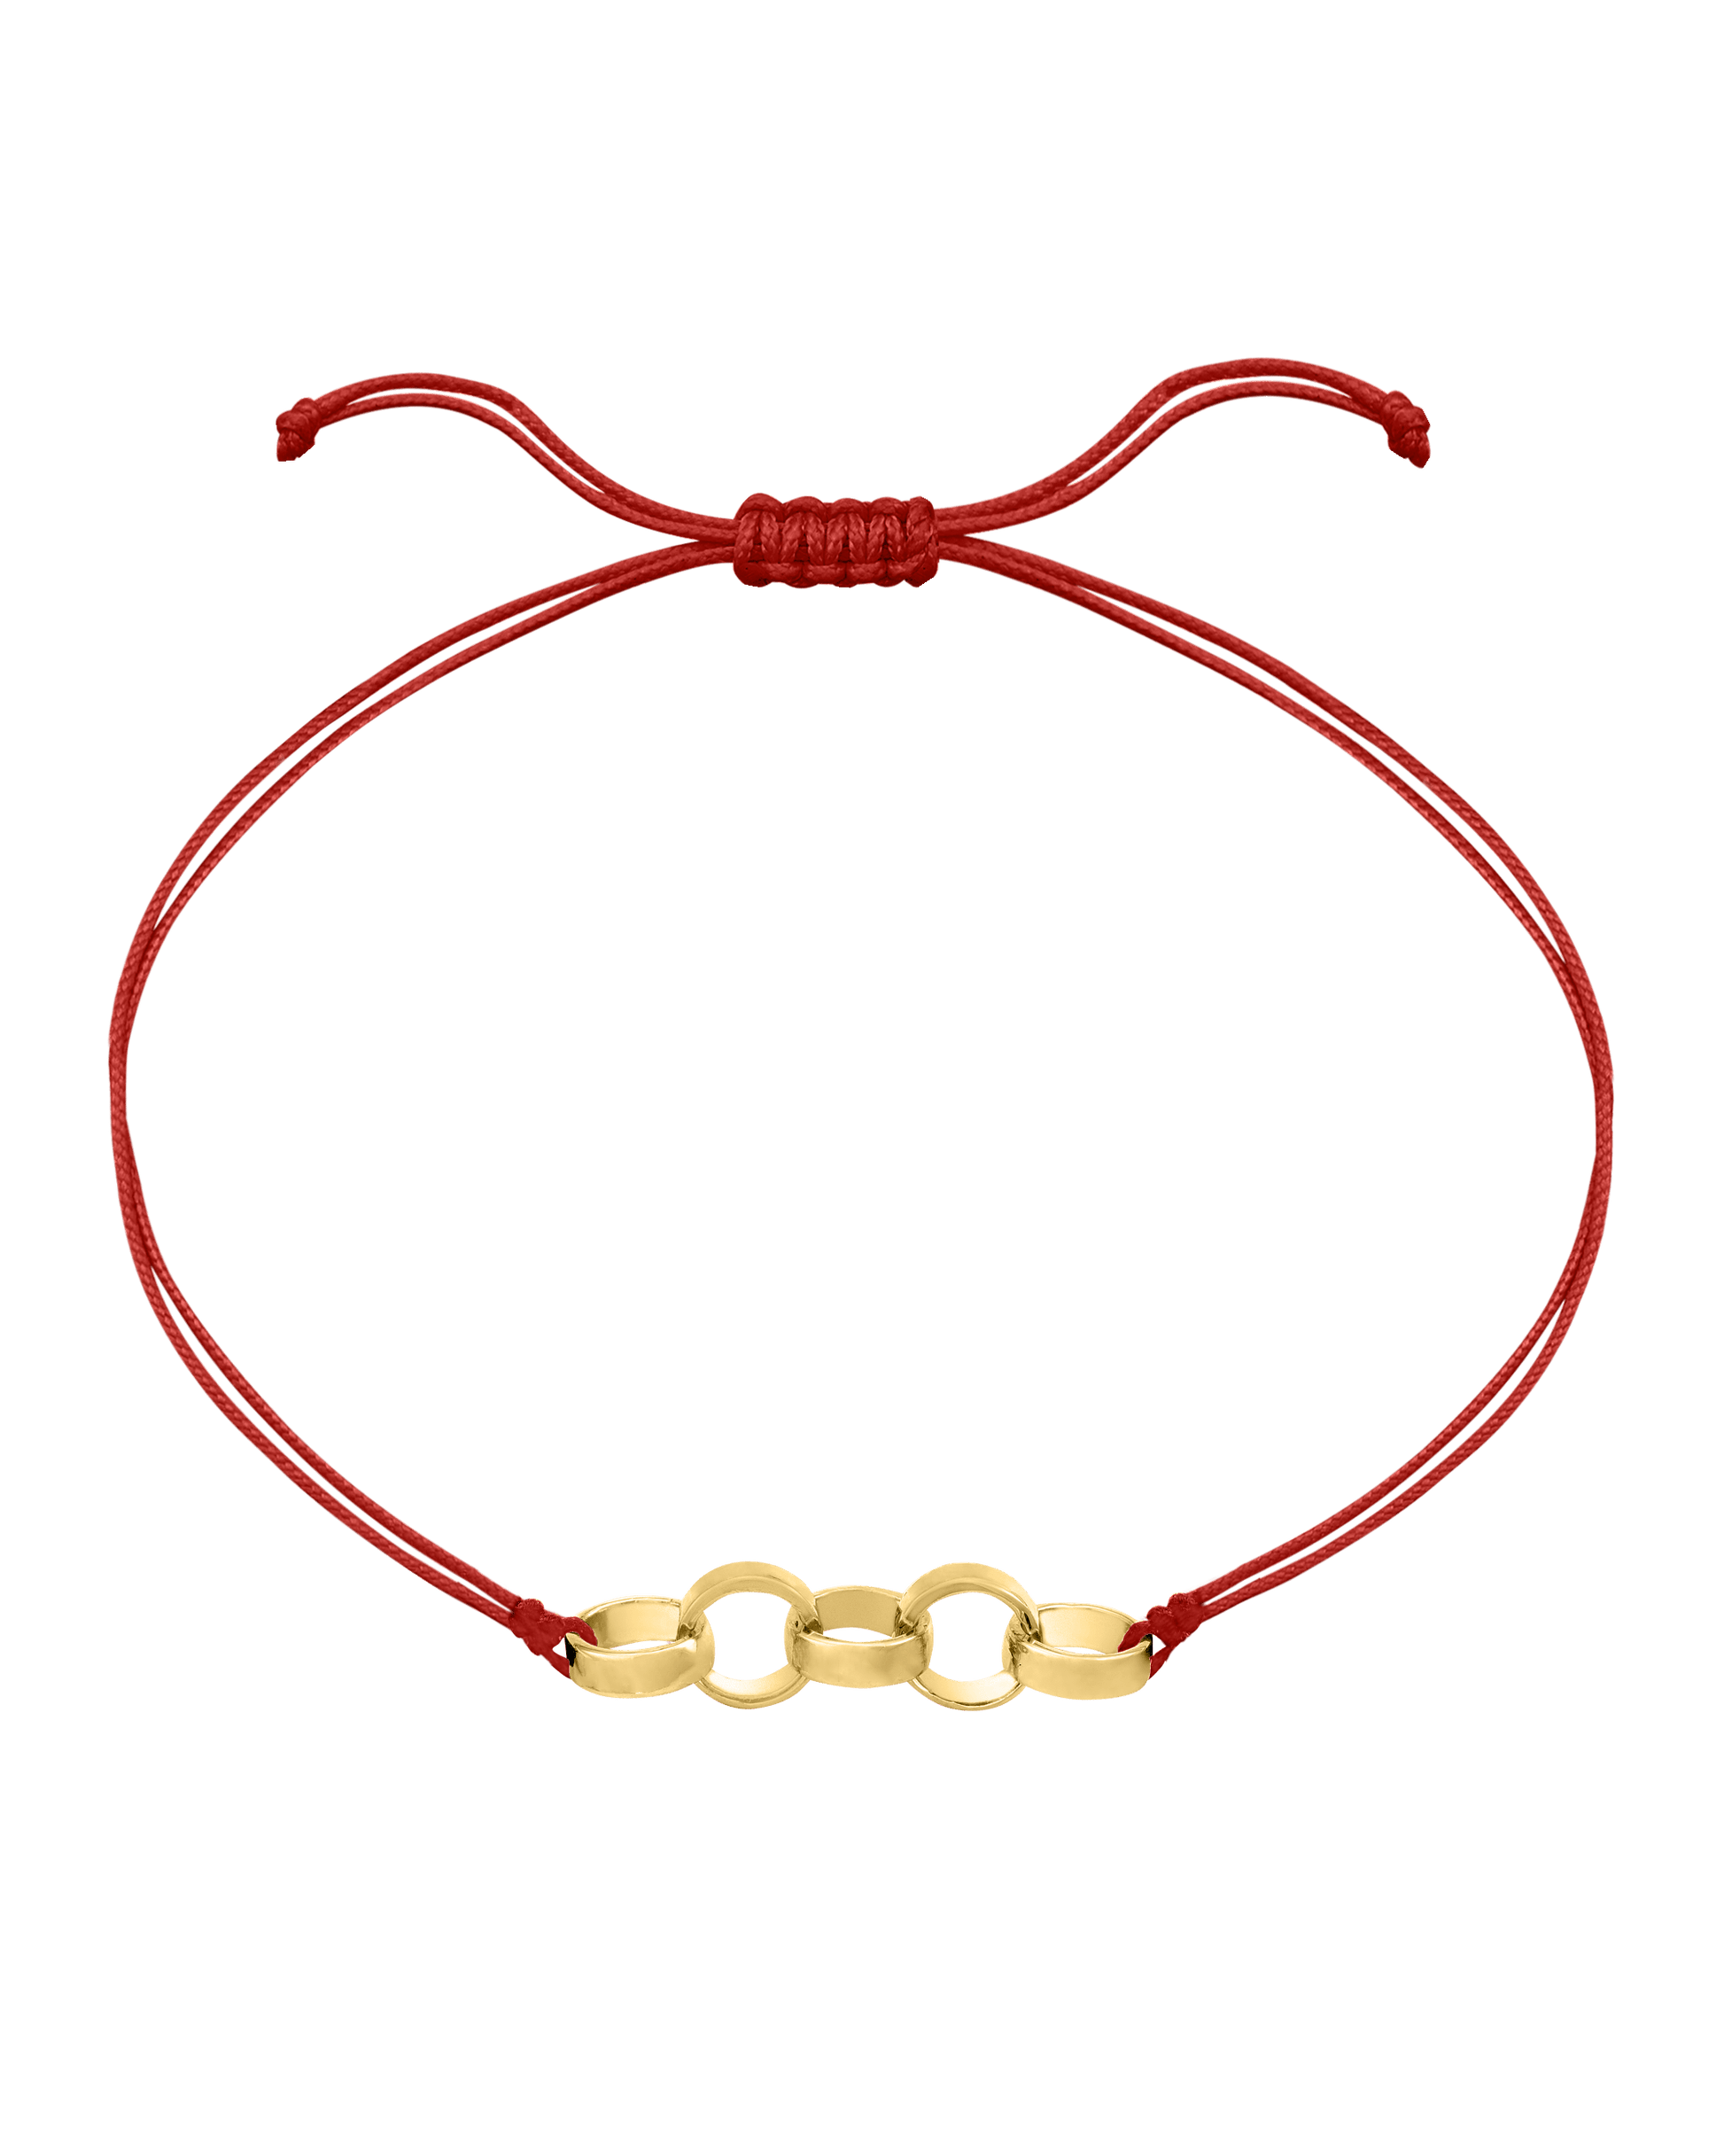 Engravable Links of Love - 18K Gold Vermeil Bracelets magal-dev 5 Red 